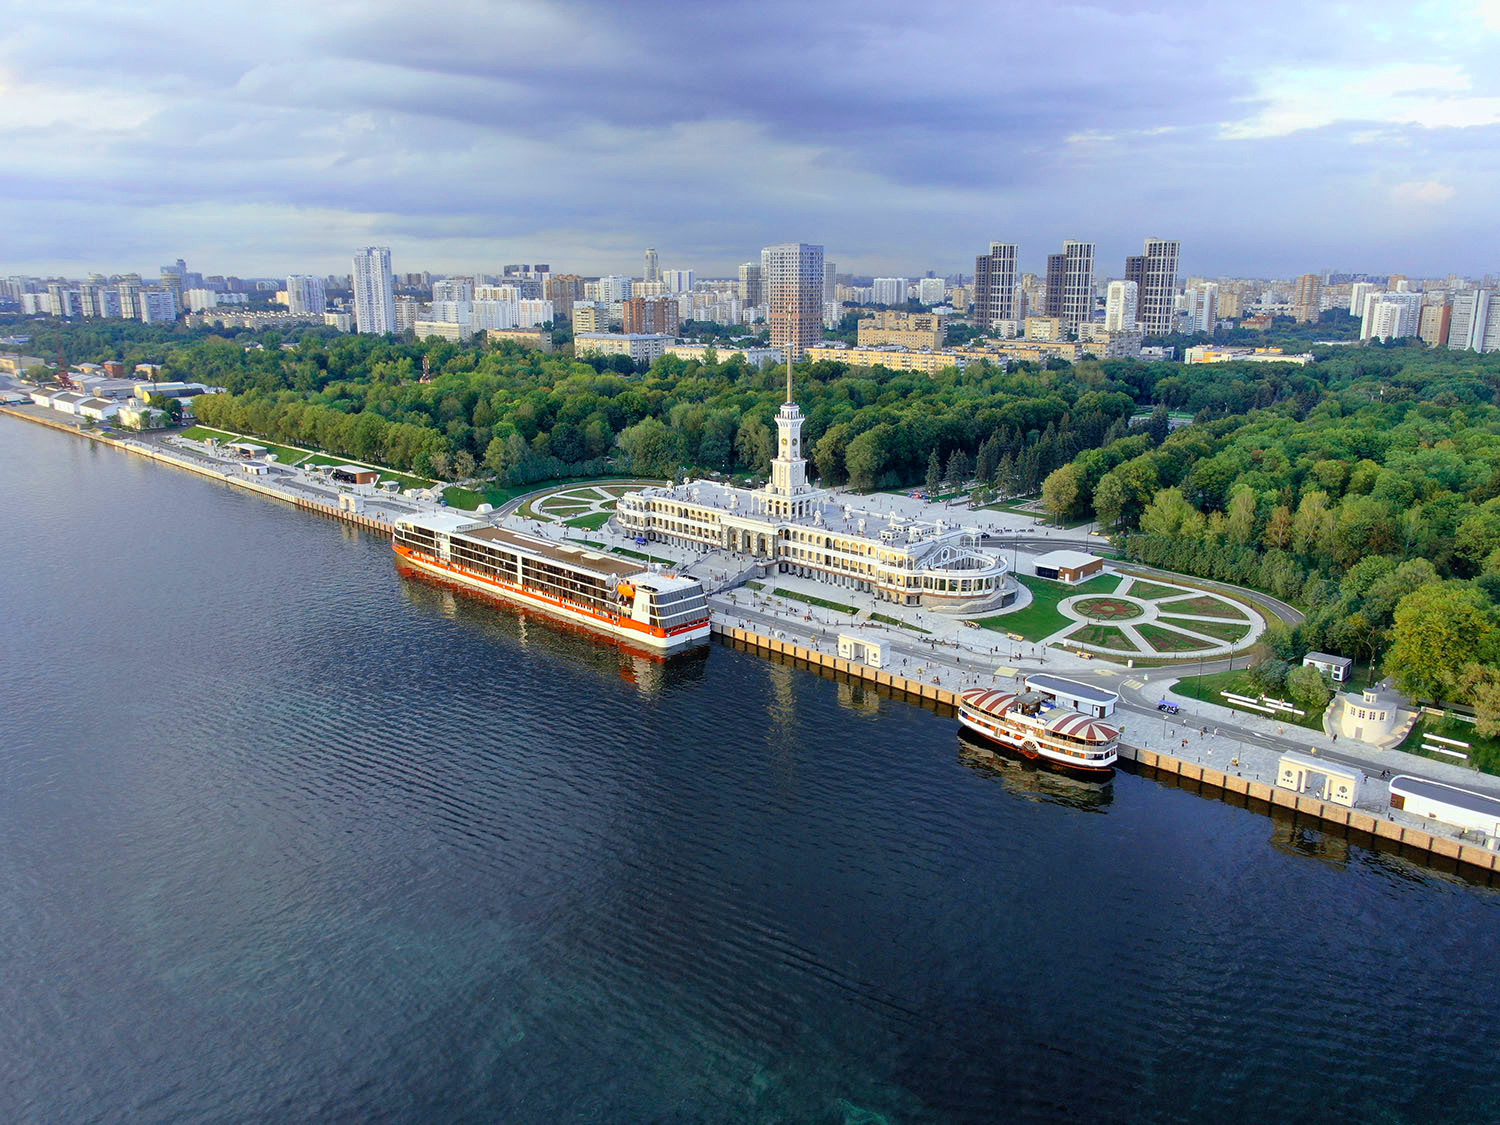 Речной вокзал в москве